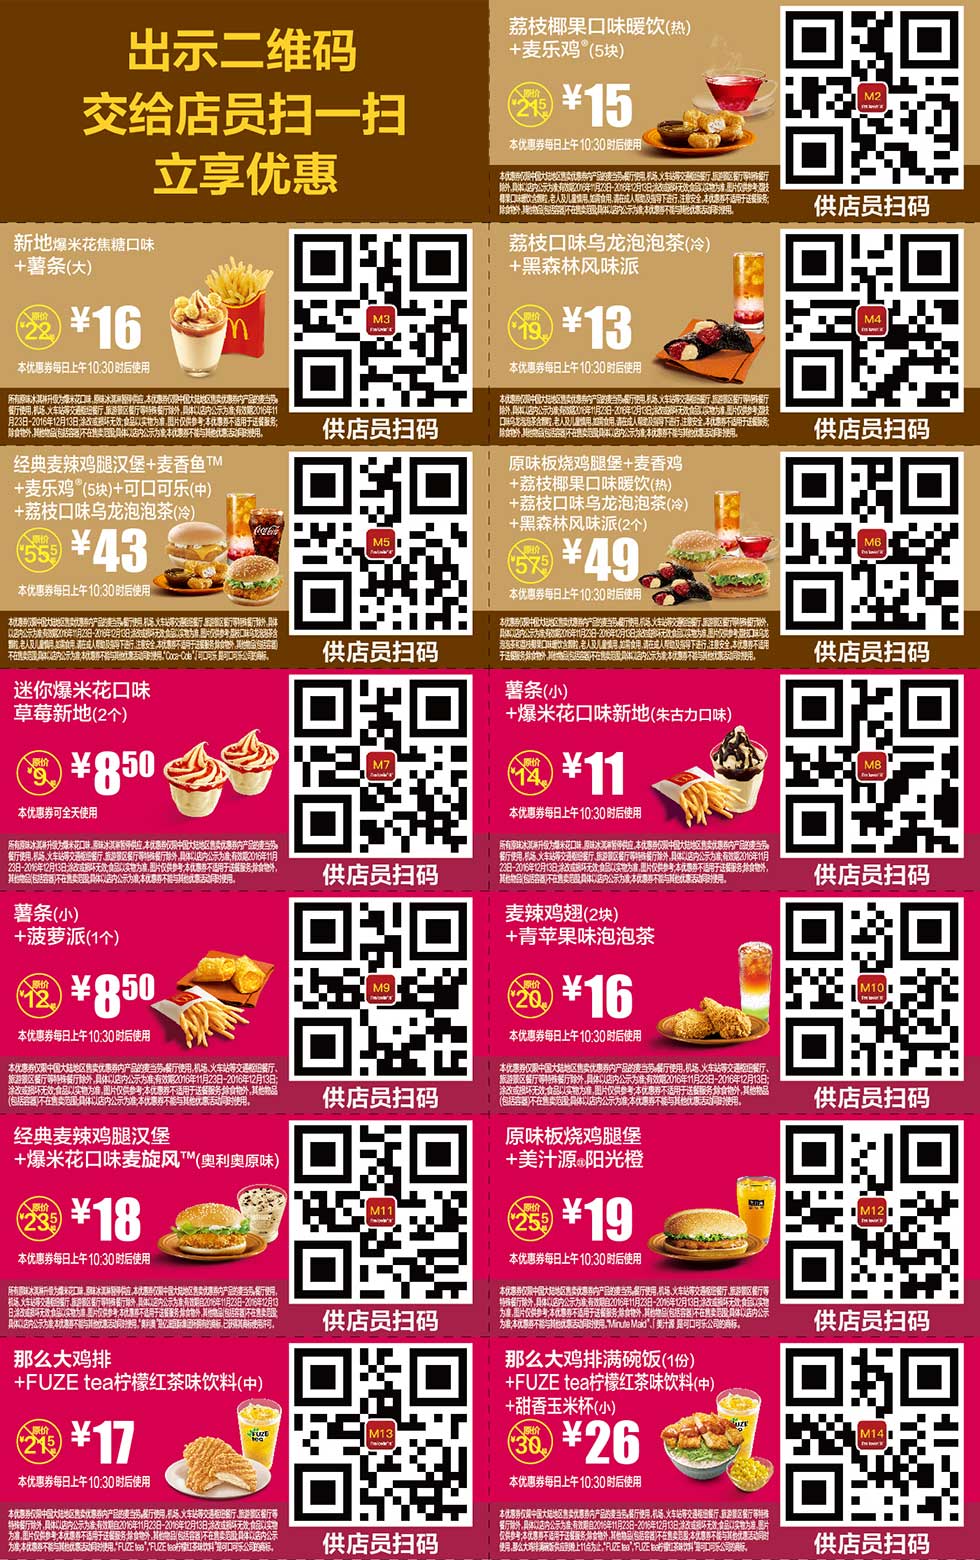 麦当劳优惠券2016年11月12月手机版整张版本，手机出示券码享受M记优惠